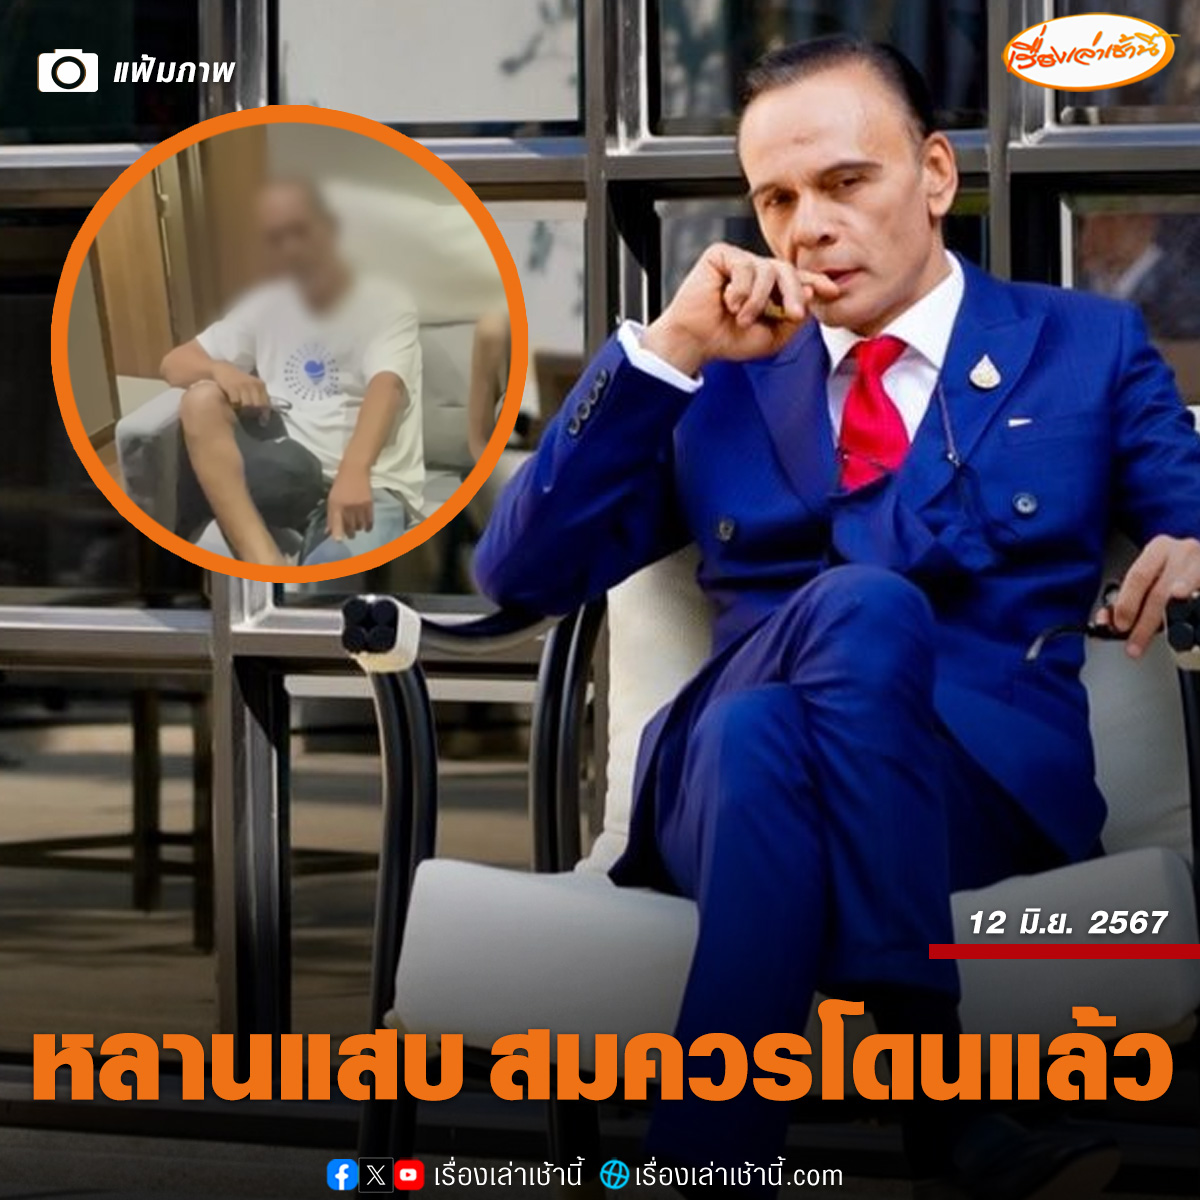 泰国内阁高官承认亲戚涉毒持枪！副总理出面帮忙说话